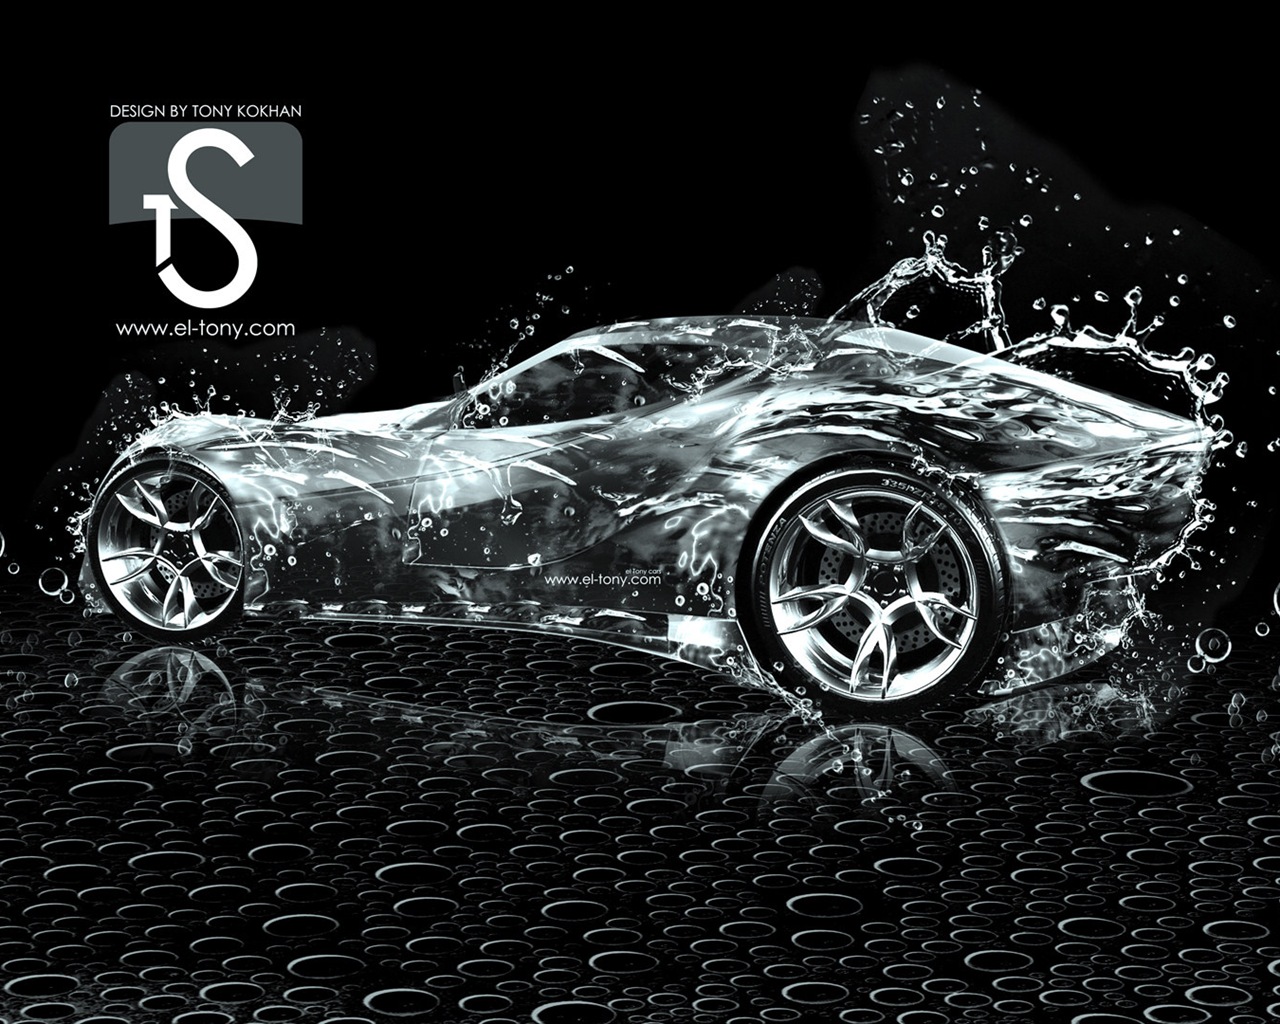 물 방울 스플래시, 아름다운 차 크리 에이 티브 디자인 배경 화면 #25 - 1280x1024